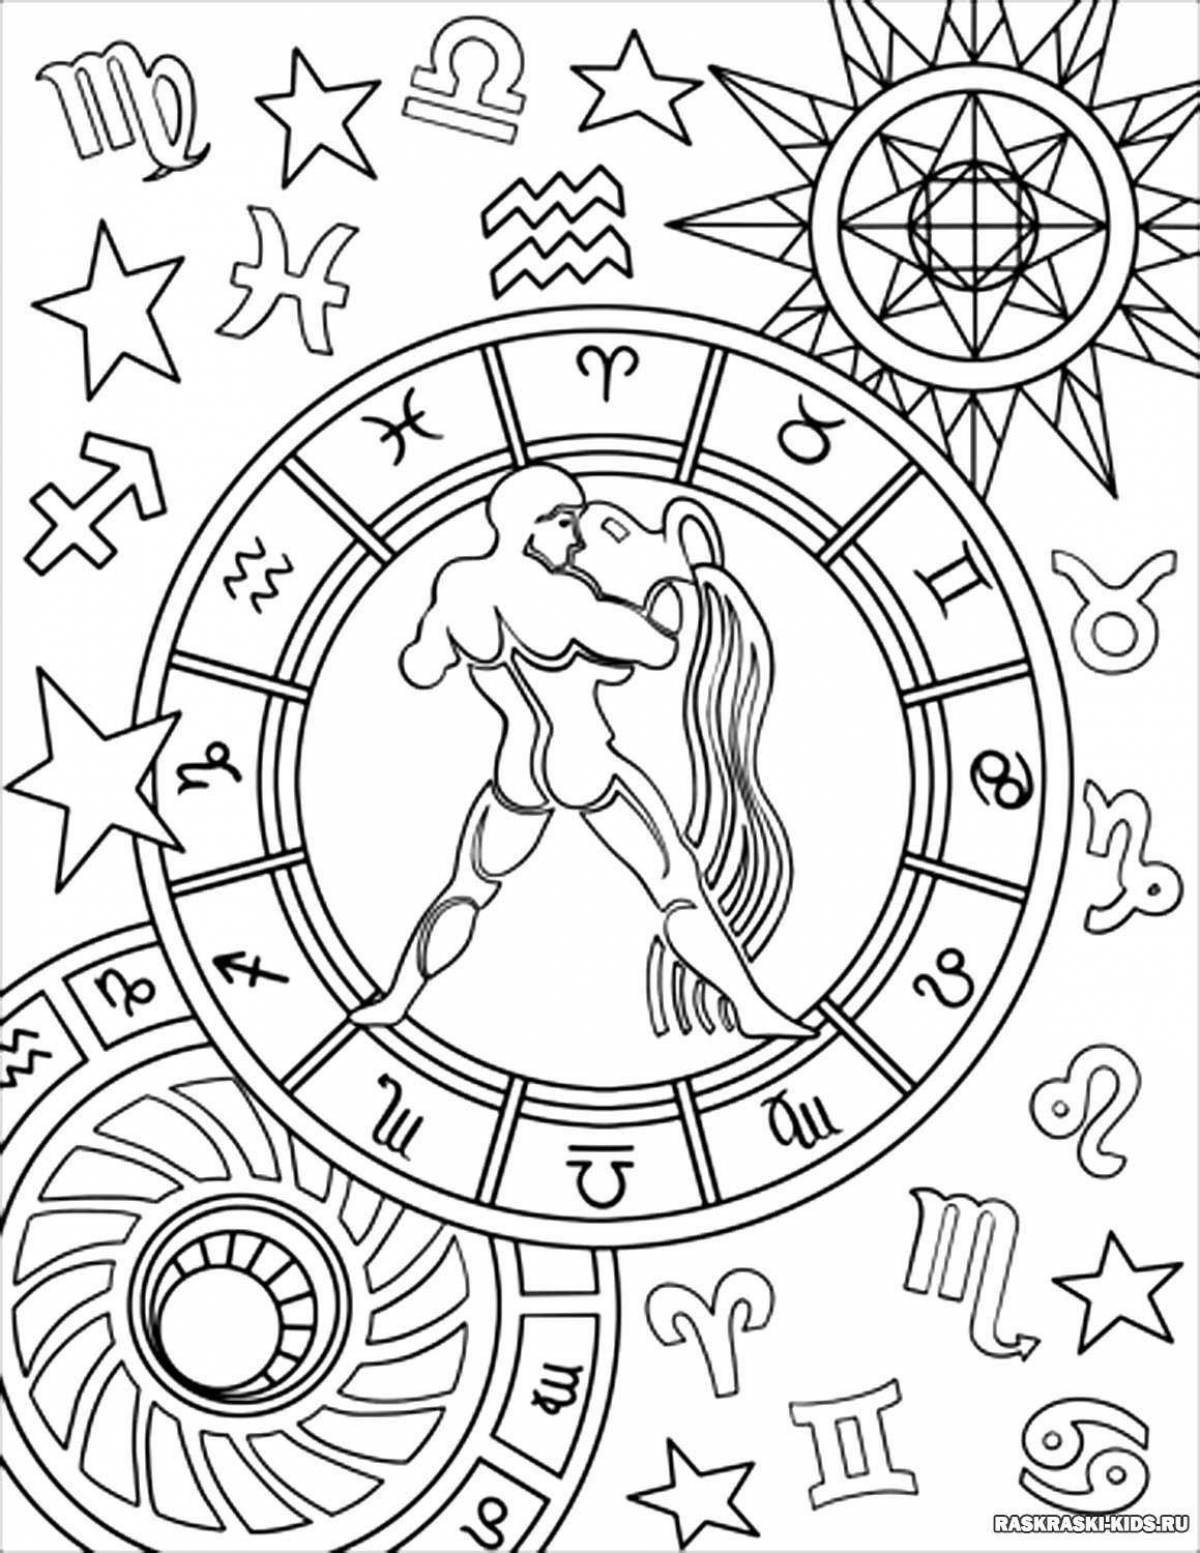 Amazing coloring book of the zodiac sign Aquarius